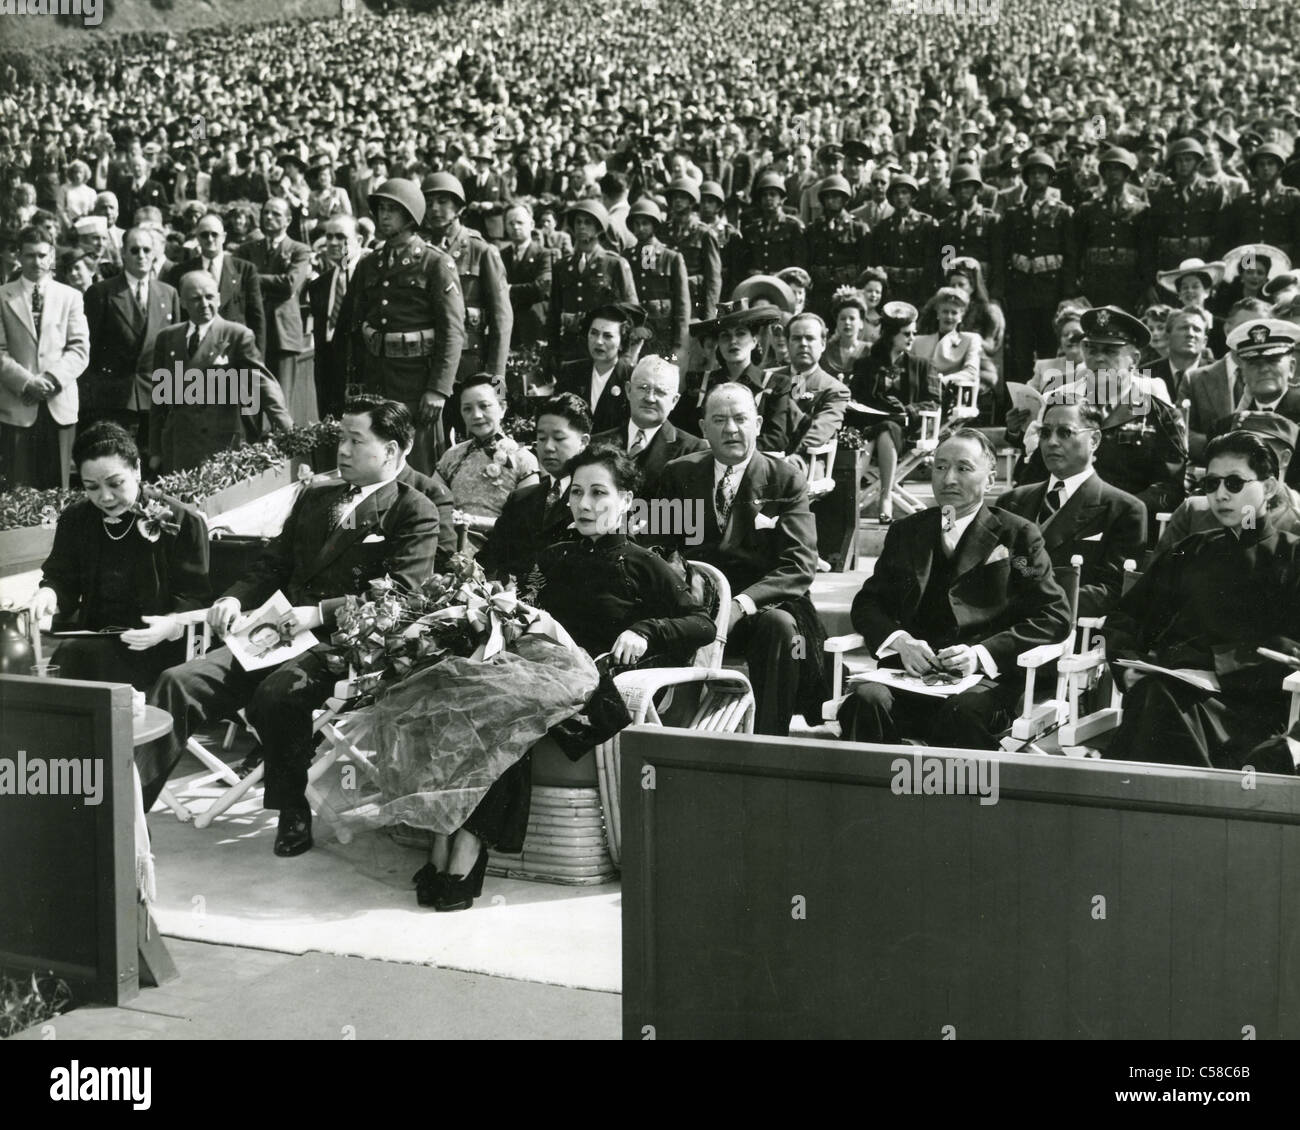 MADAME Chiang Kai-shek (Soong maggio-ling) all'Hollywood Bowl Giugno 1943 prima di lasciare gli Stati Uniti Foto Stock